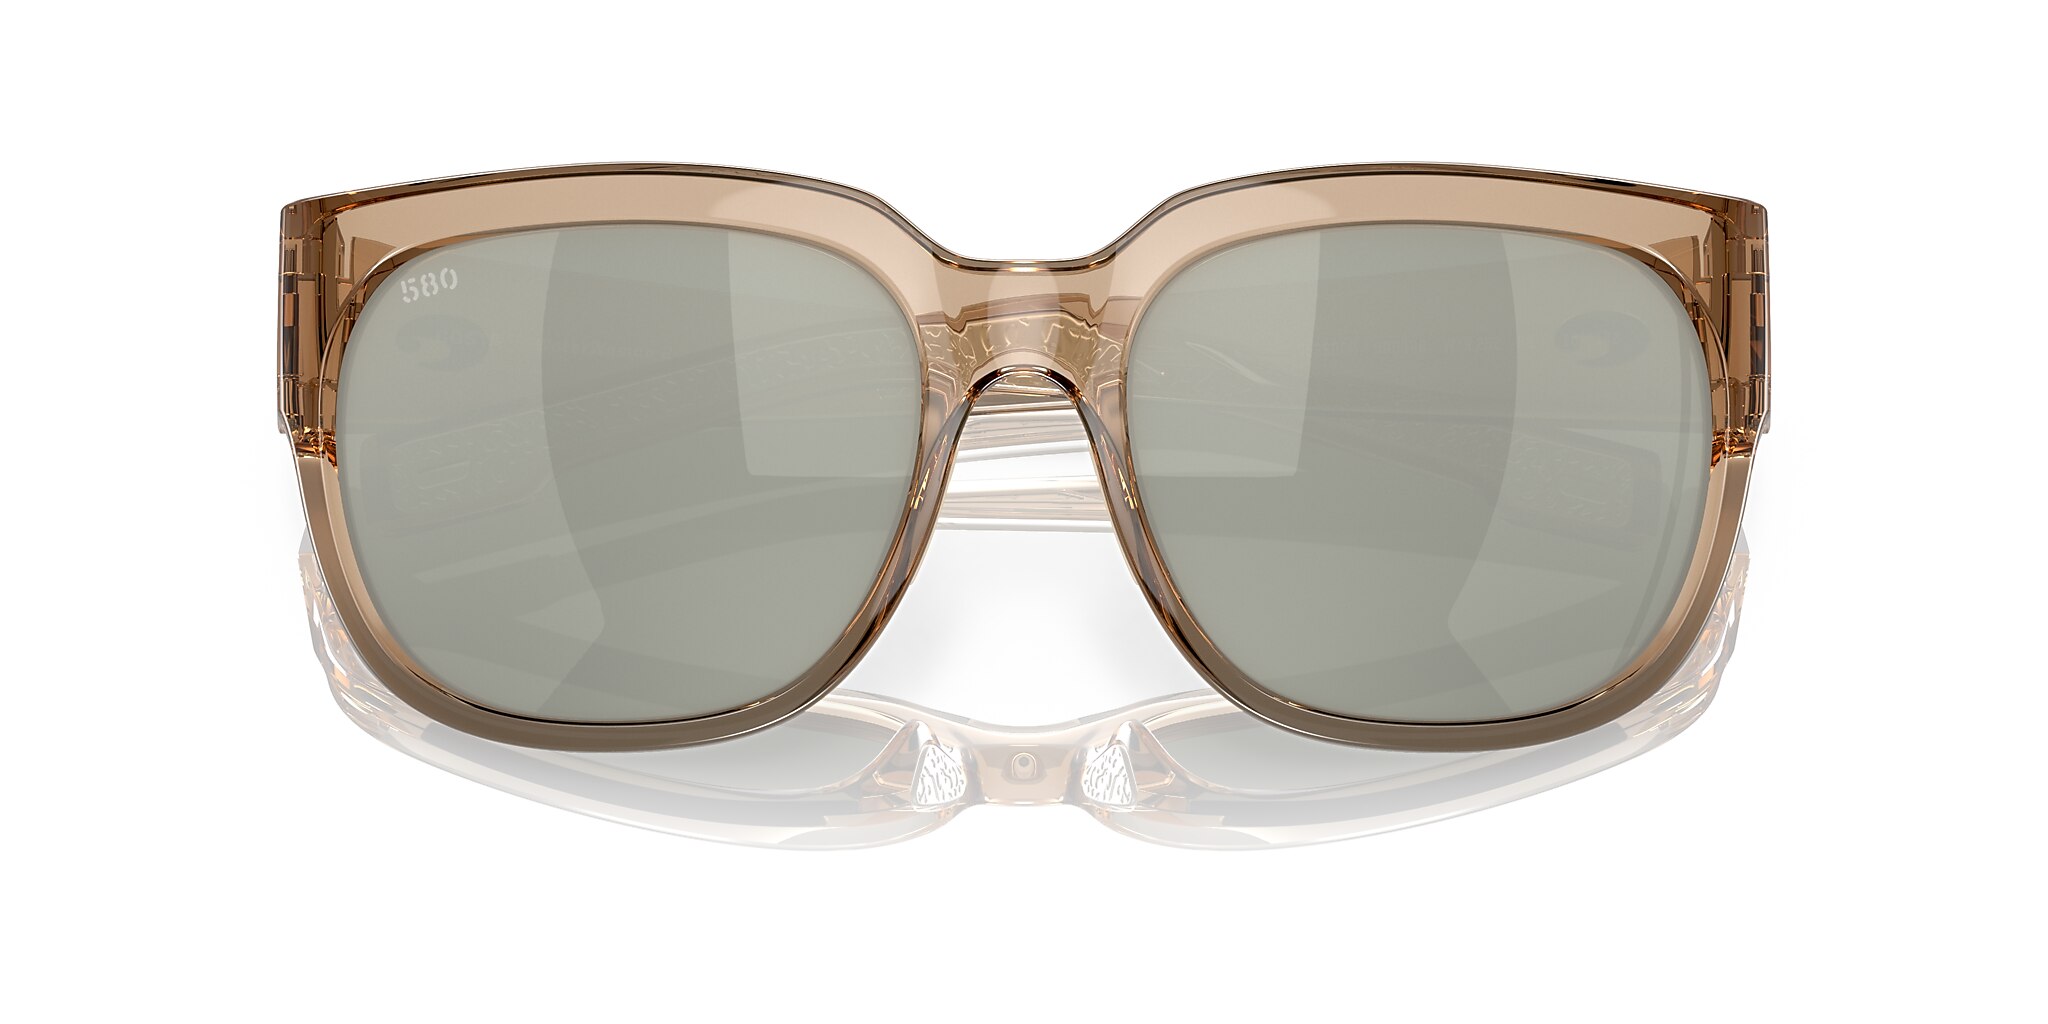 Waterwoman 2 Polarized Sunglasses in Gray Silver Mirror | Costa 